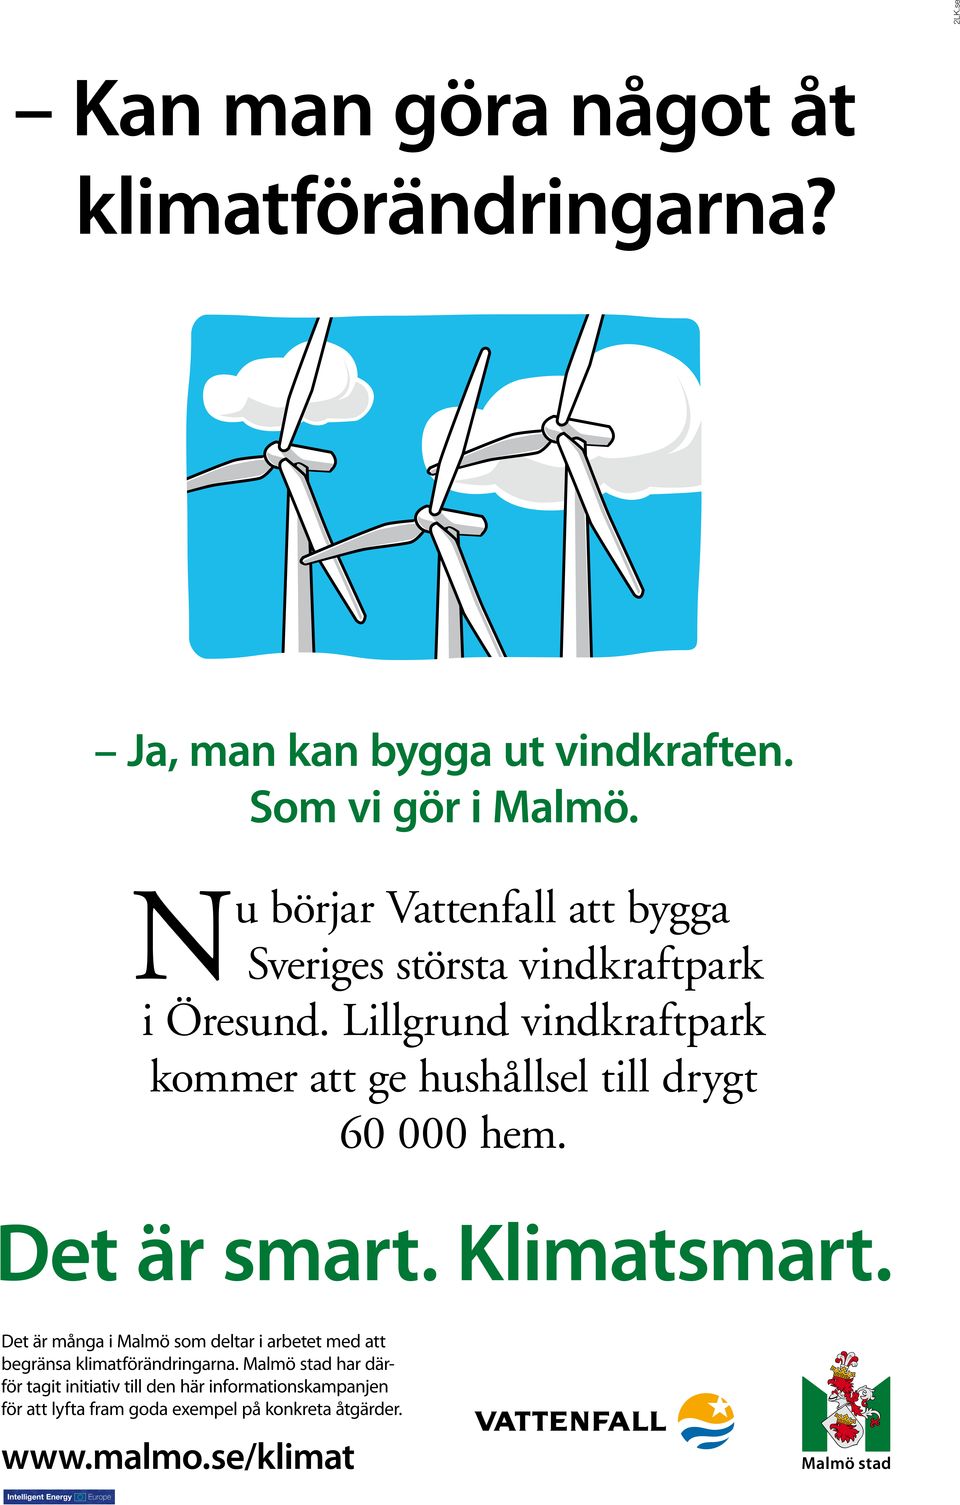 Lillgrund vindkraftpark kommer att ge hushållsel till drygt 60 000 hem.